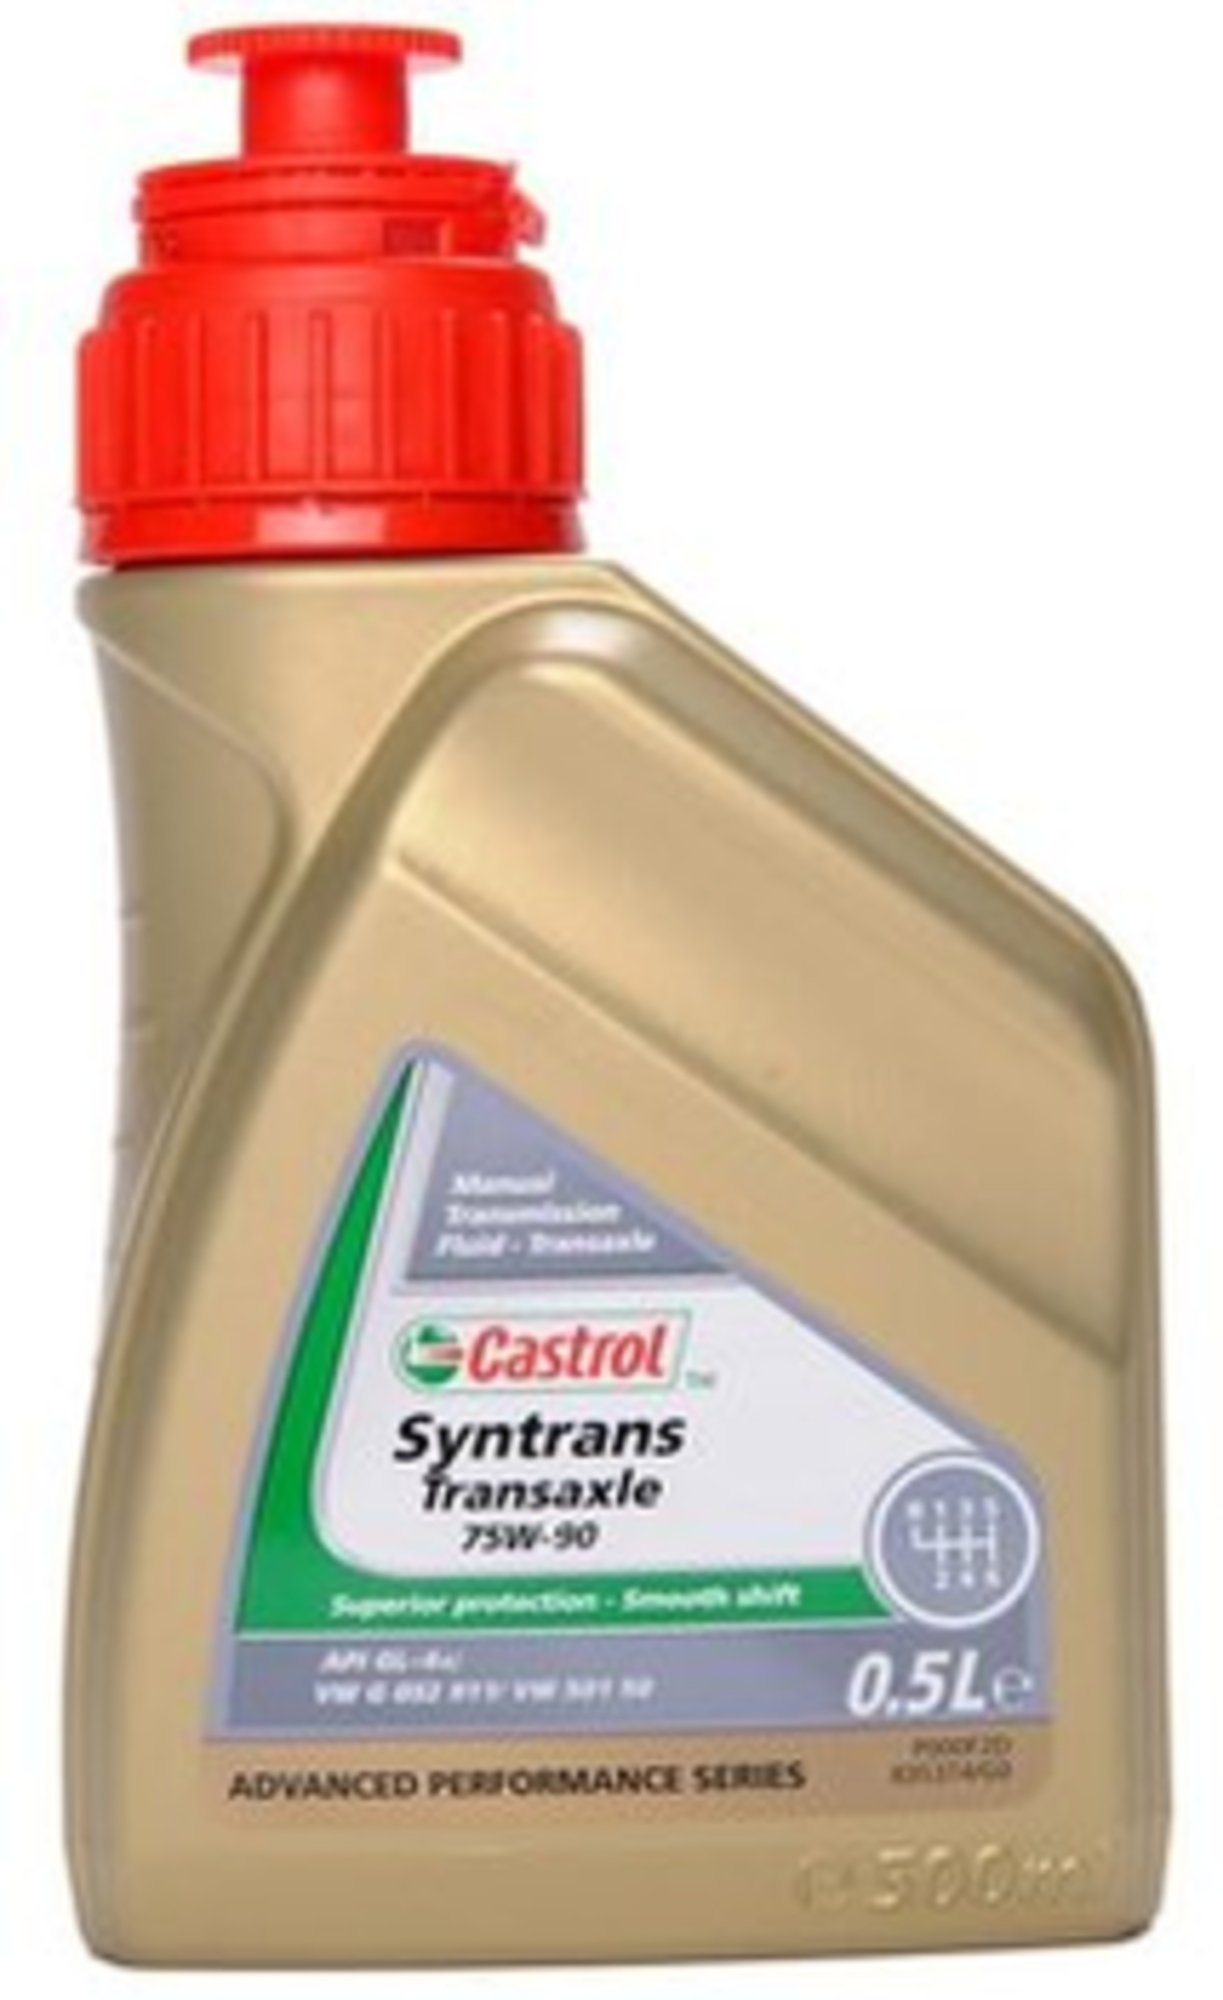 Castrol syntrans trans 75w90 (0.5l)